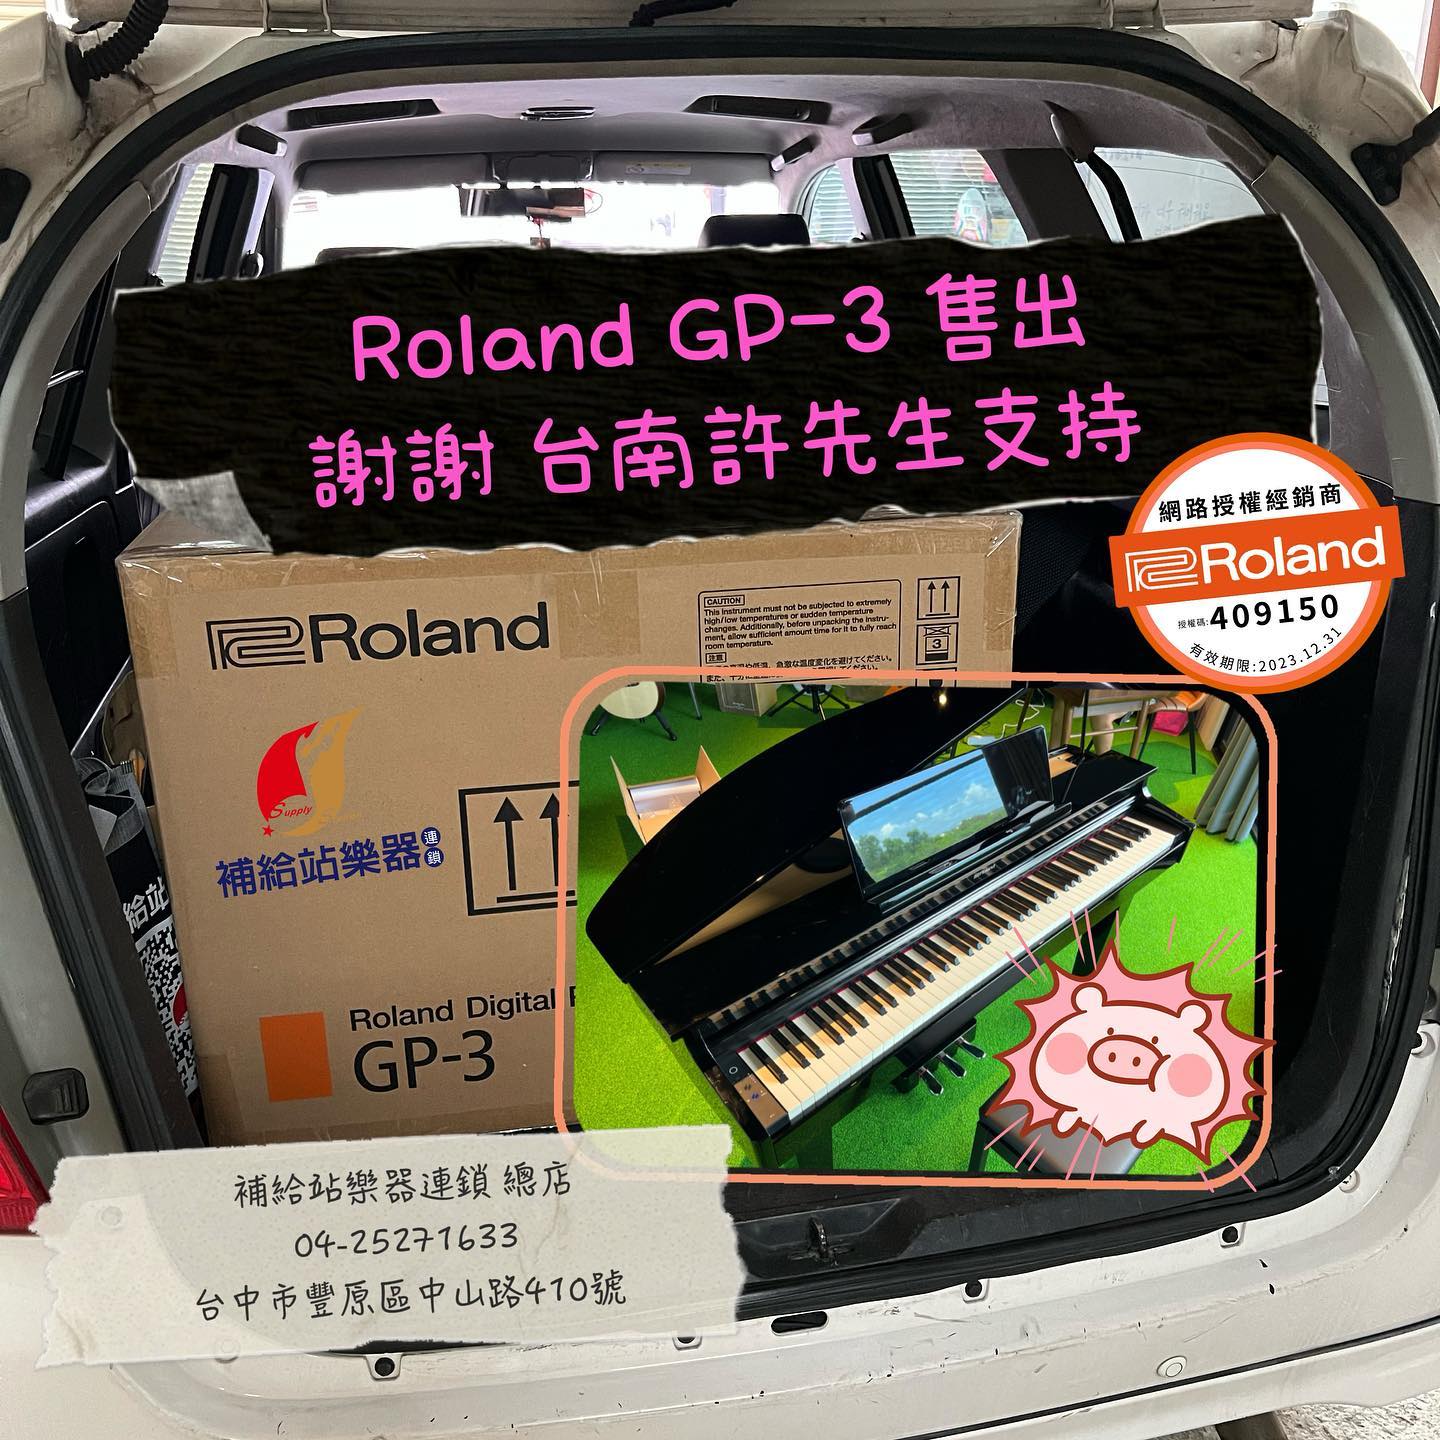 Roland、GP3、小型平台電鋼琴、原廠公司貨、原廠保固、免費到府安裝